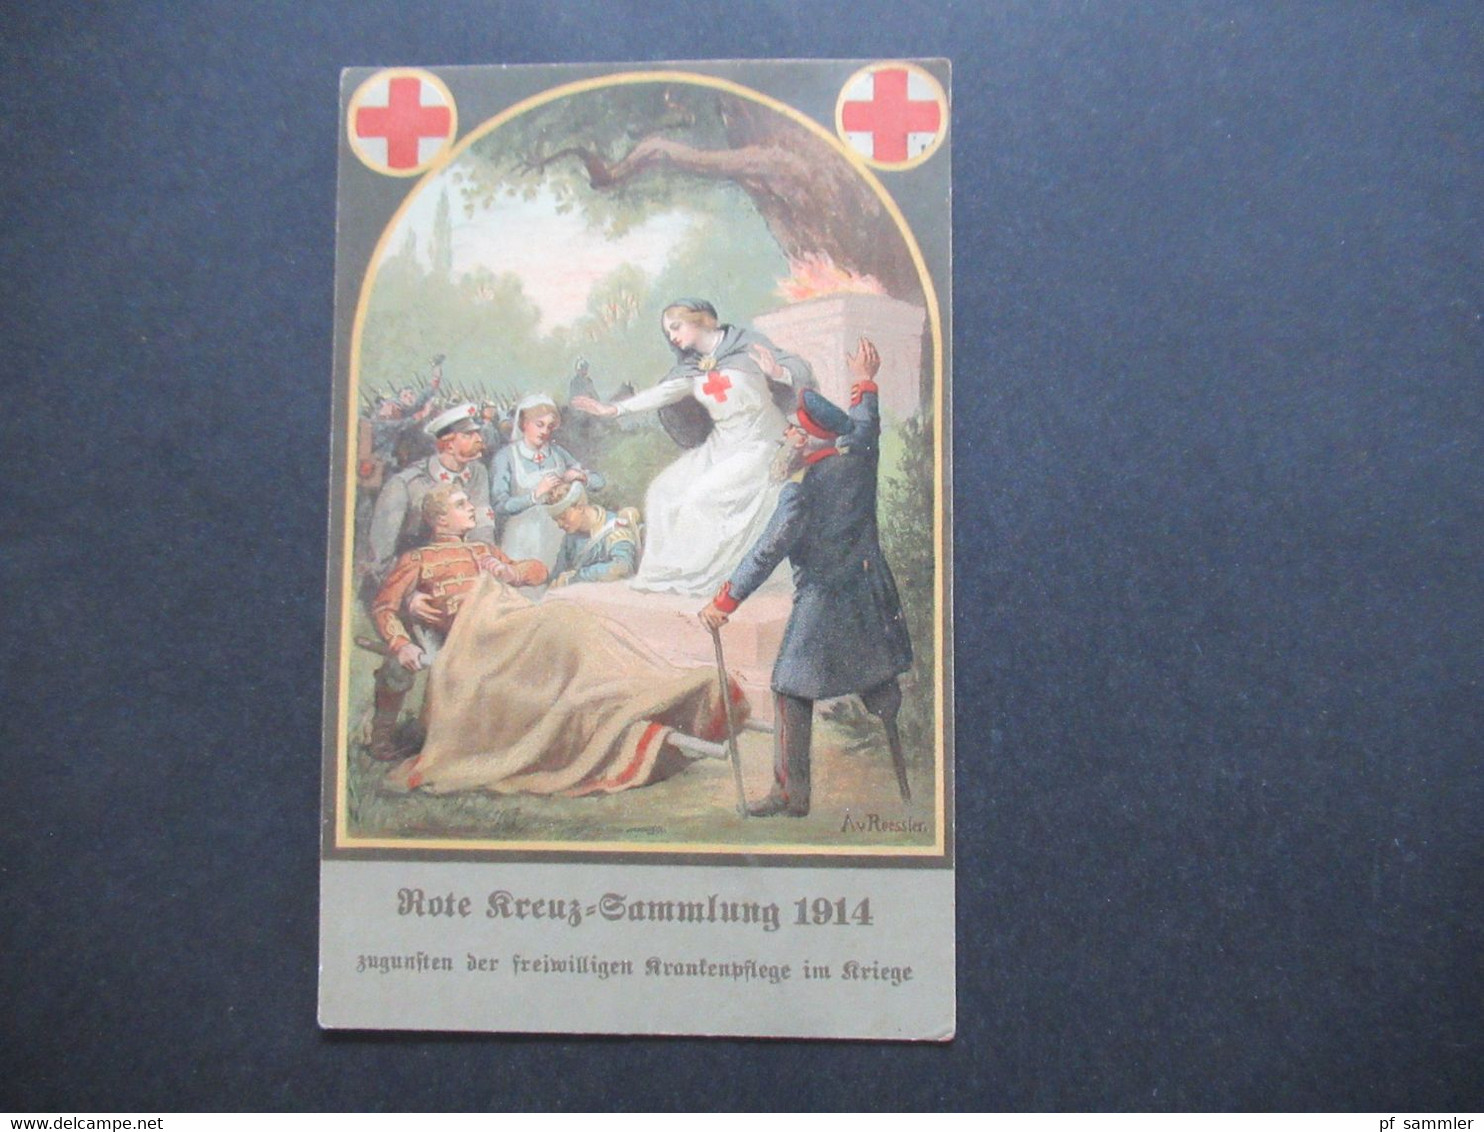 DR 1914 AK Rote Kreuz Sammlung 1914 Zugunsten Der Freiwilligen Krankenpflege Im Kriege Orts Postkarte Detmold - Croce Rossa